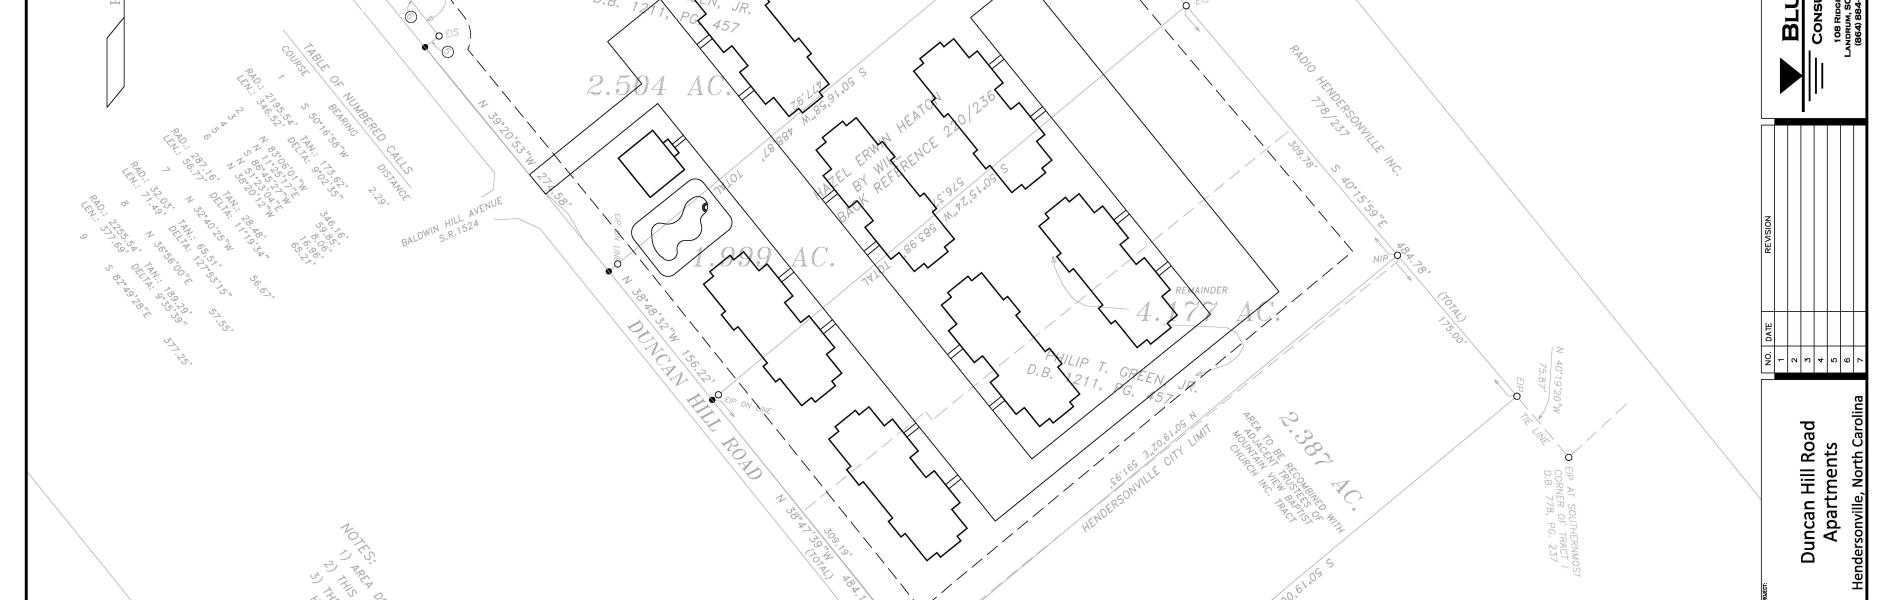 Duncan Terrace Concept Plan